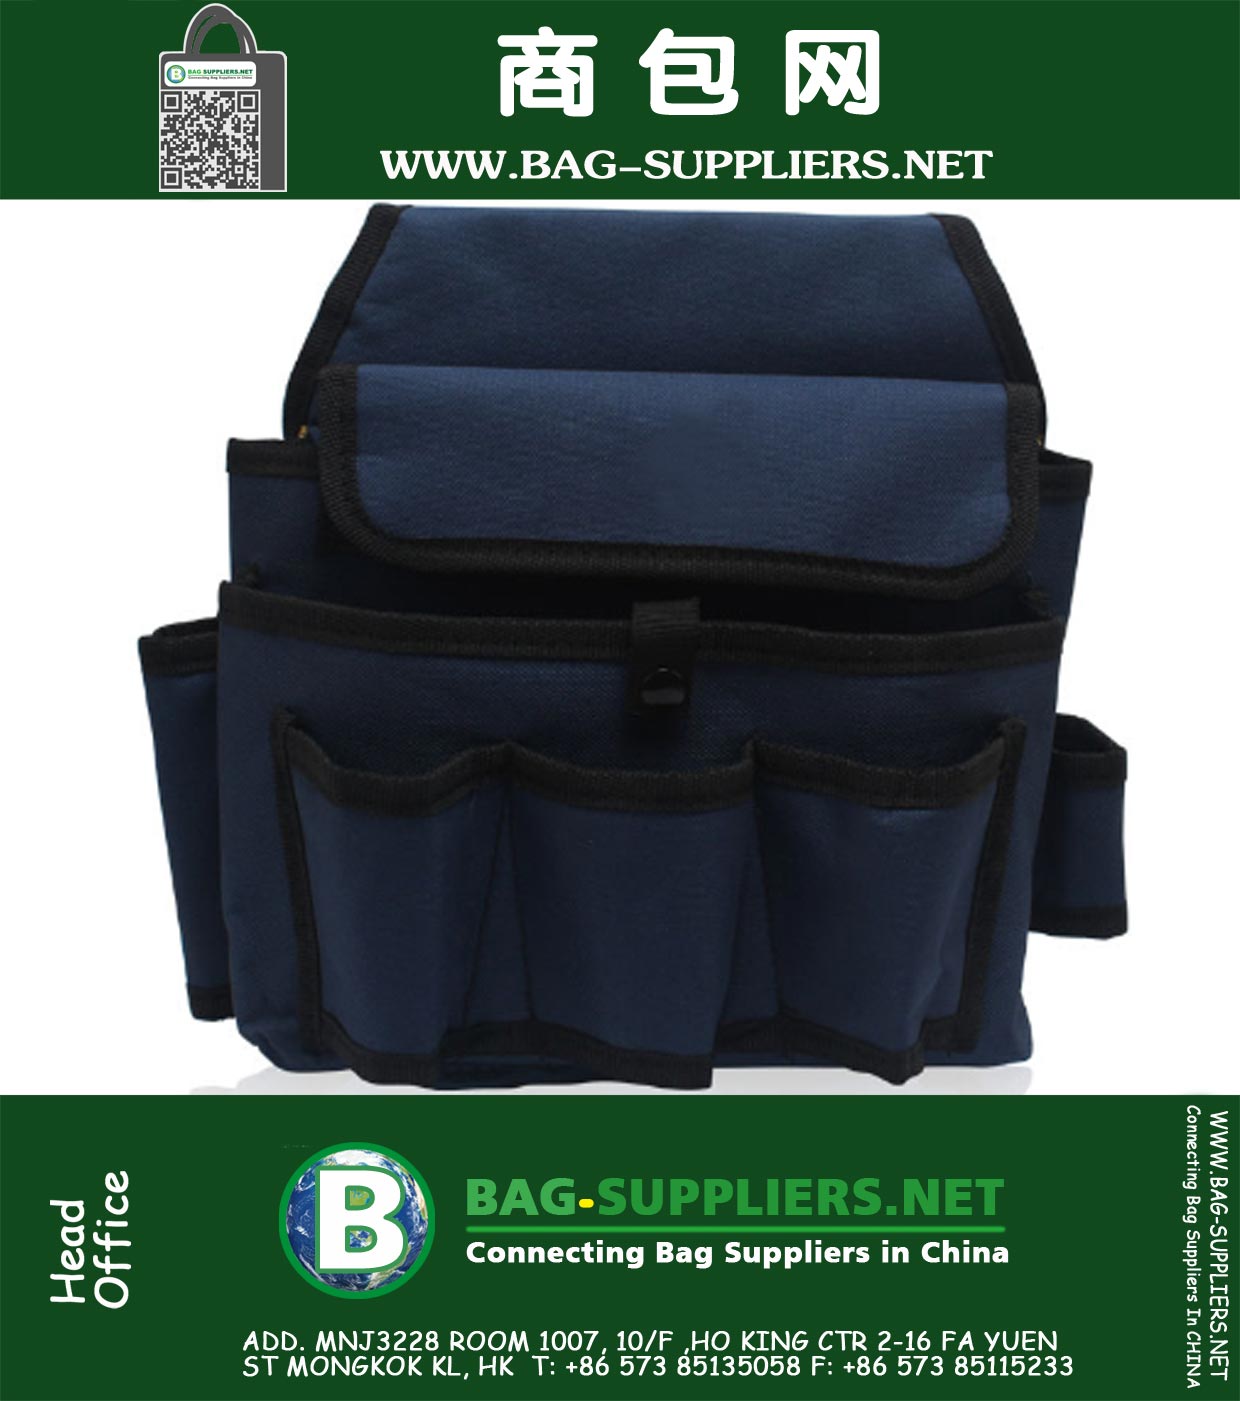 el cinturón de bolsa bolsa de herramientas para la bolsa Plus cinturón de herramientas de bolsillo bolsa de herramientas kit de reparación de herramientas caja de herramientas